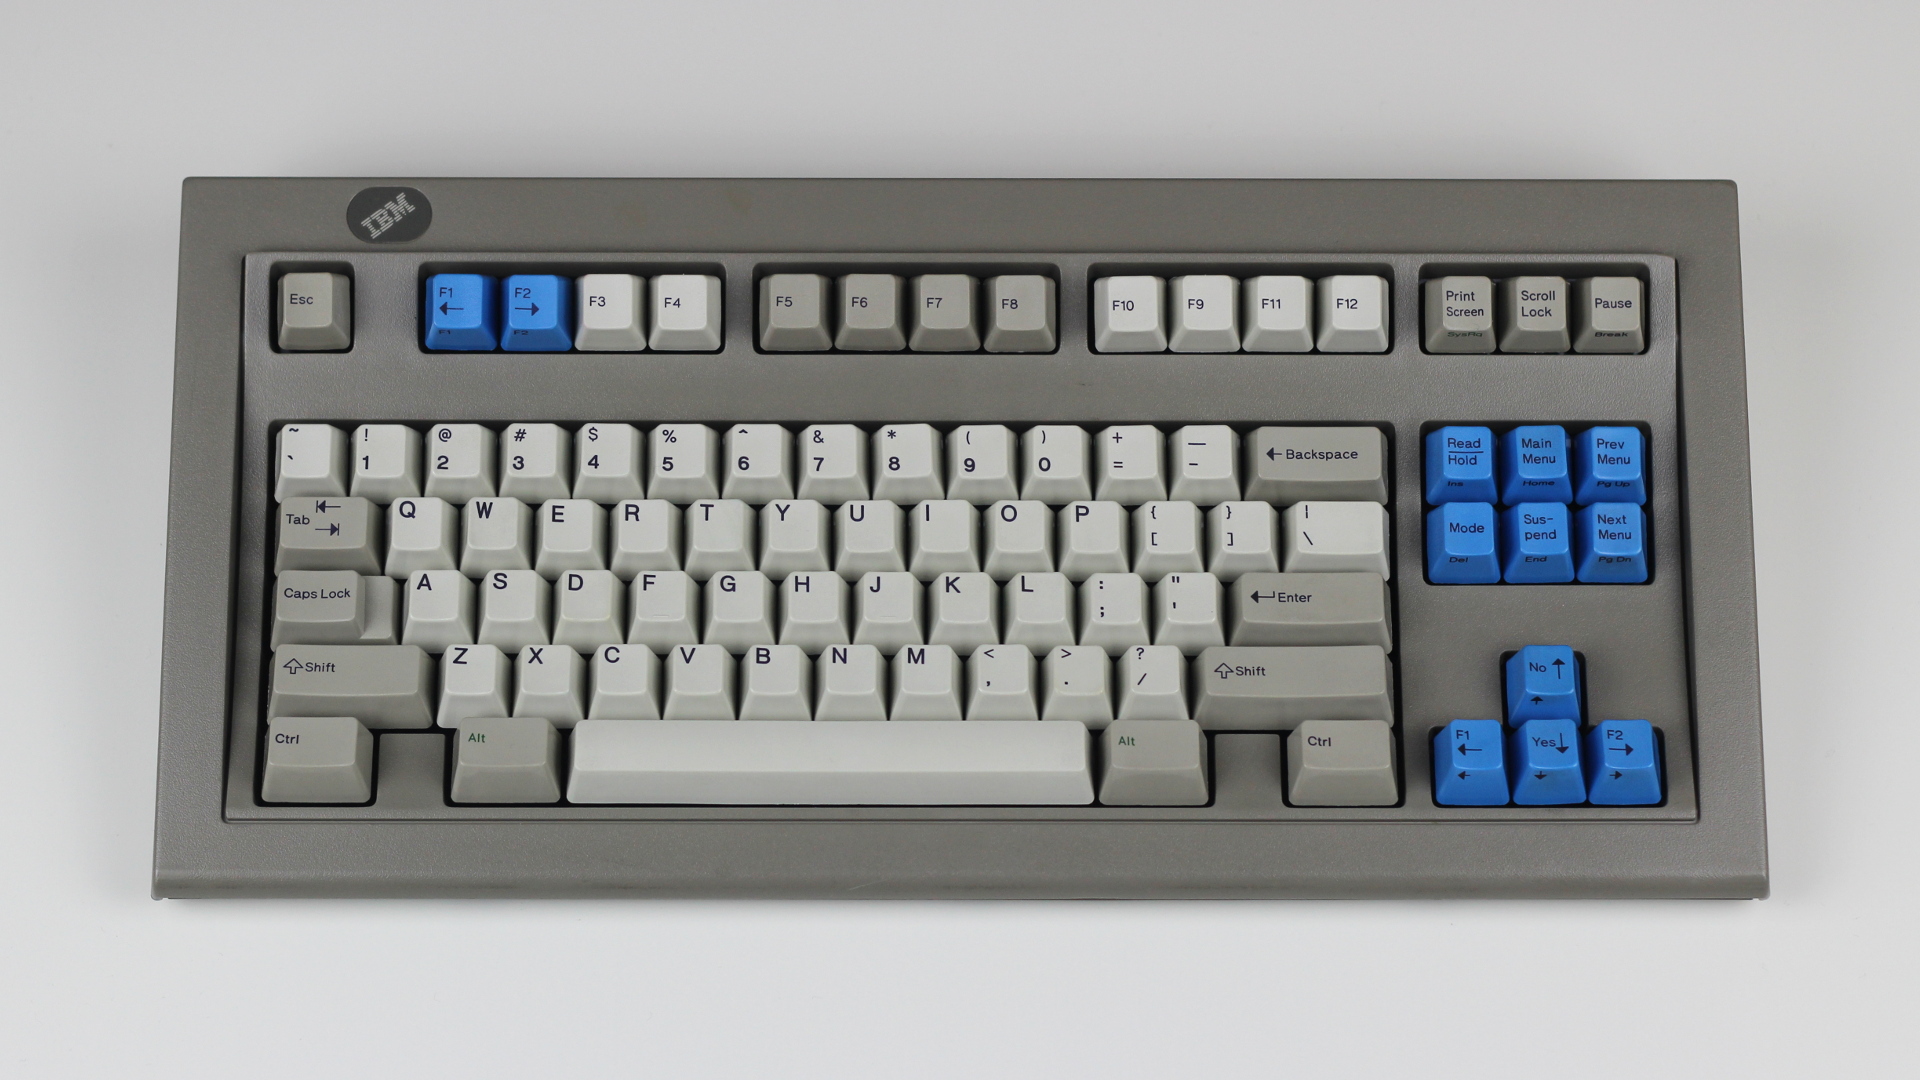 Model M Space Saving Keyboard | Shark's Wiki